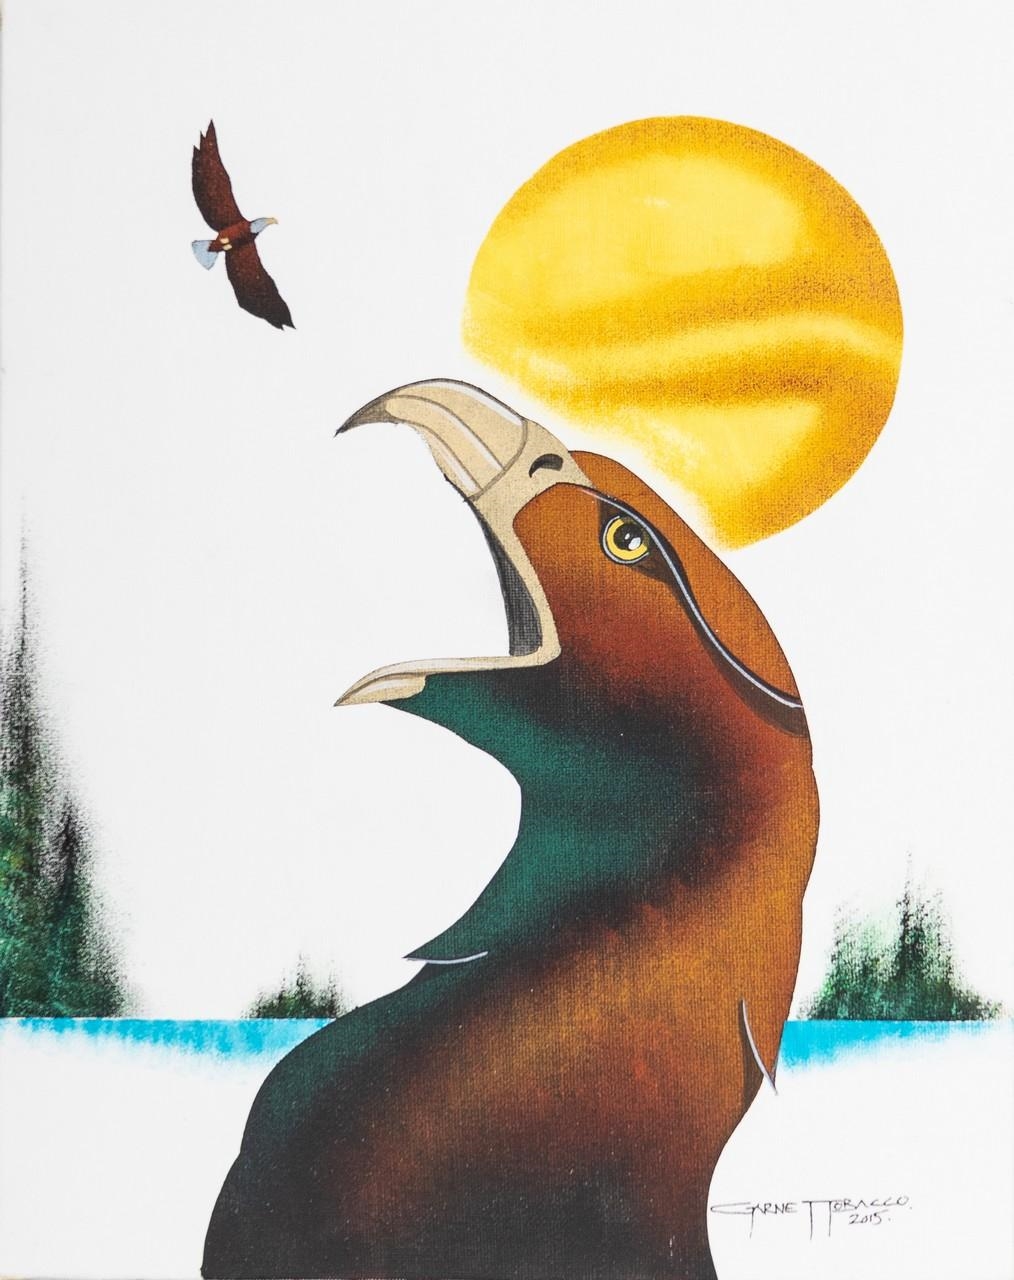 Eagle by Garnet Tobacco, dated 2015